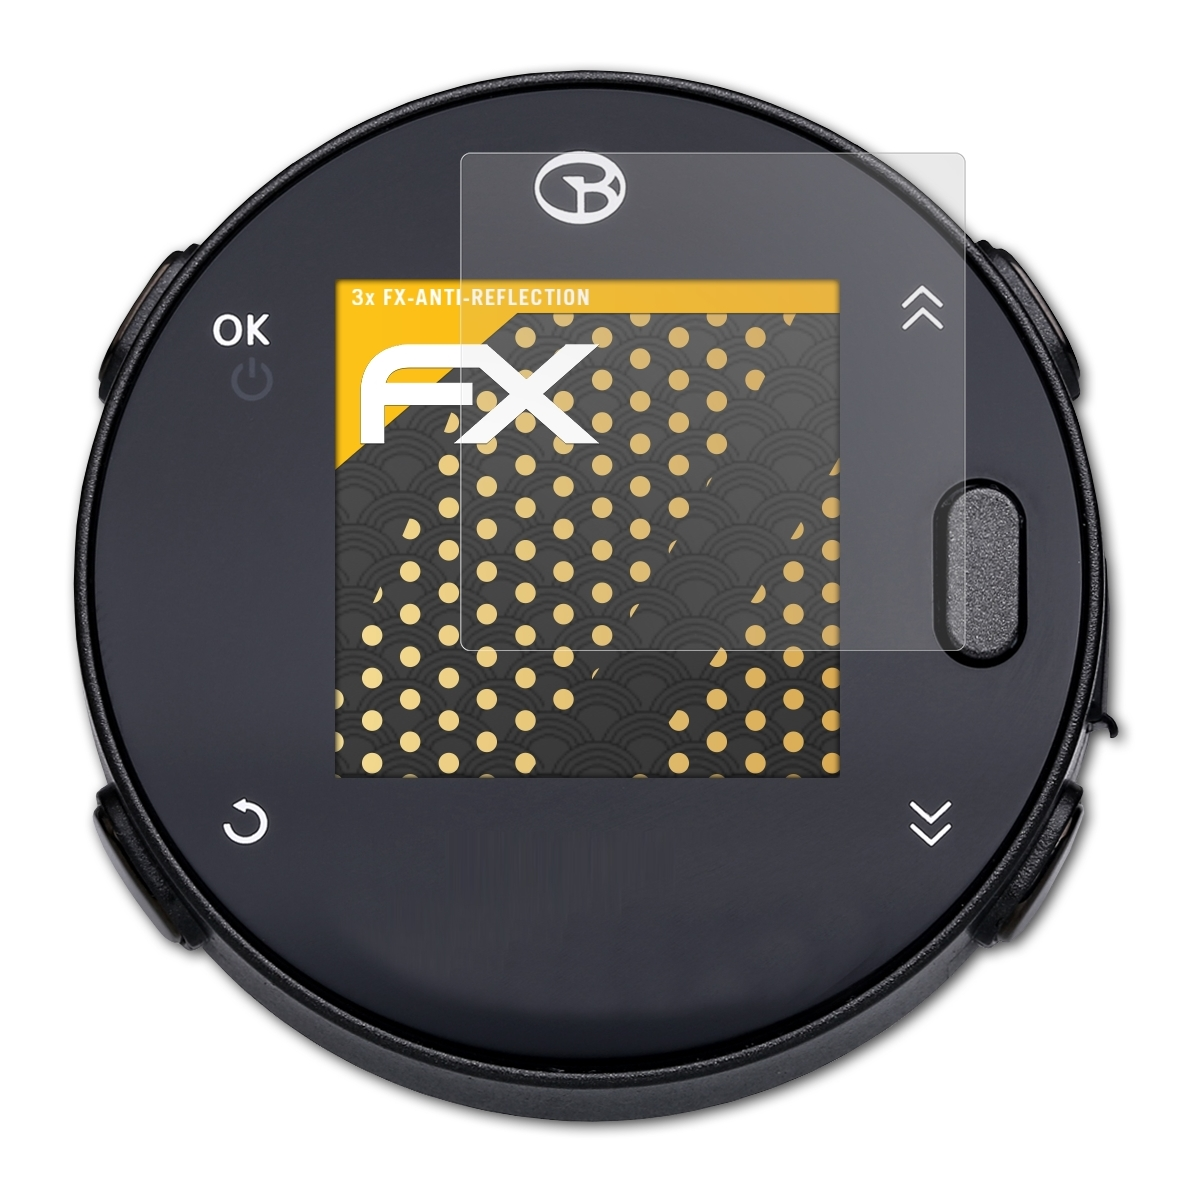 FX-Antireflex ATFOLIX Displayschutz(für 3x GolfBuddy Voice X)